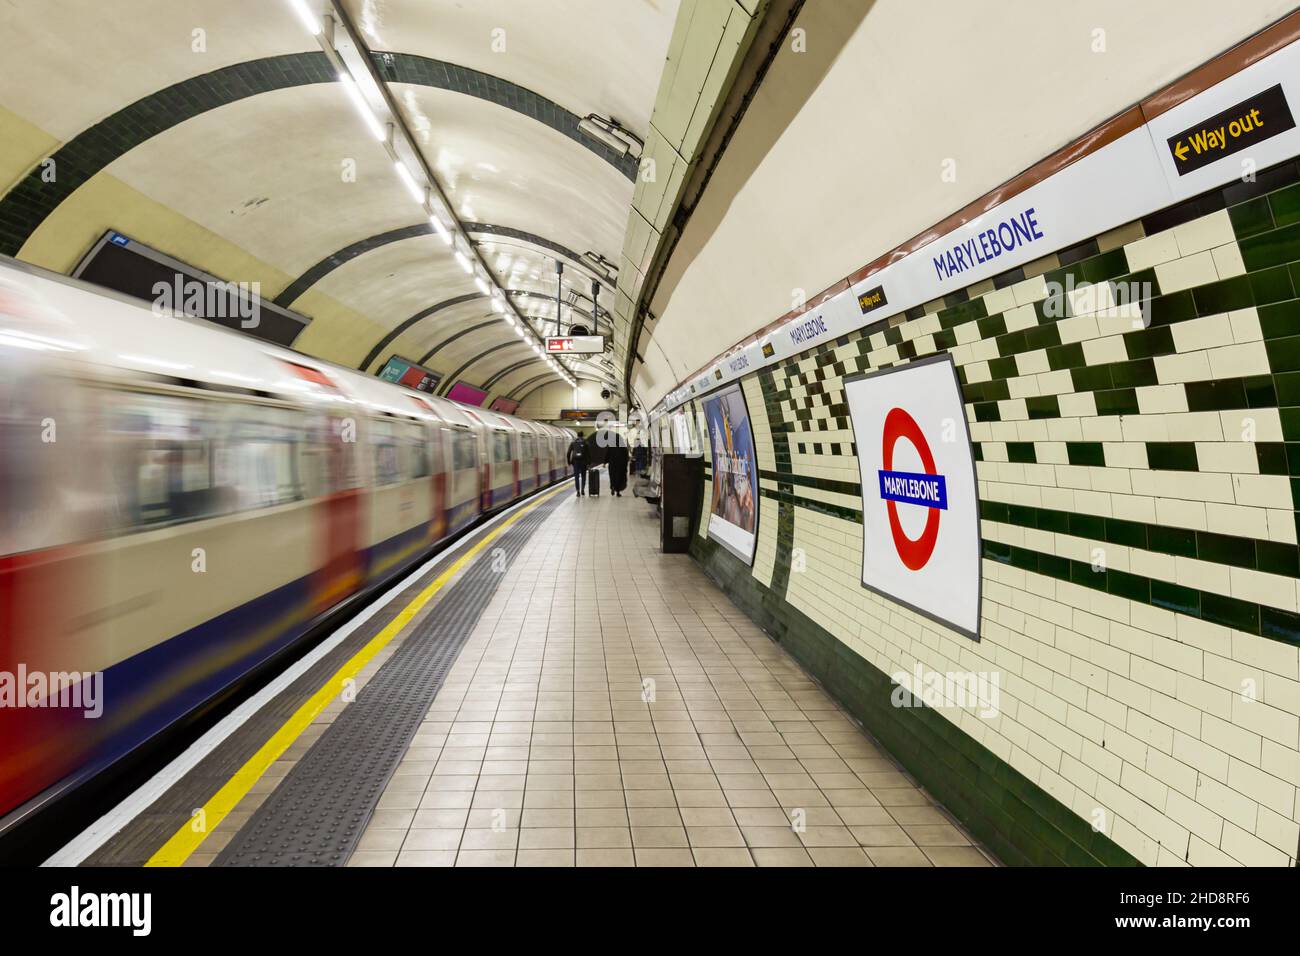 Plate-forme Bakerloo Line à la station Marylebone du métro de Londres Banque D'Images